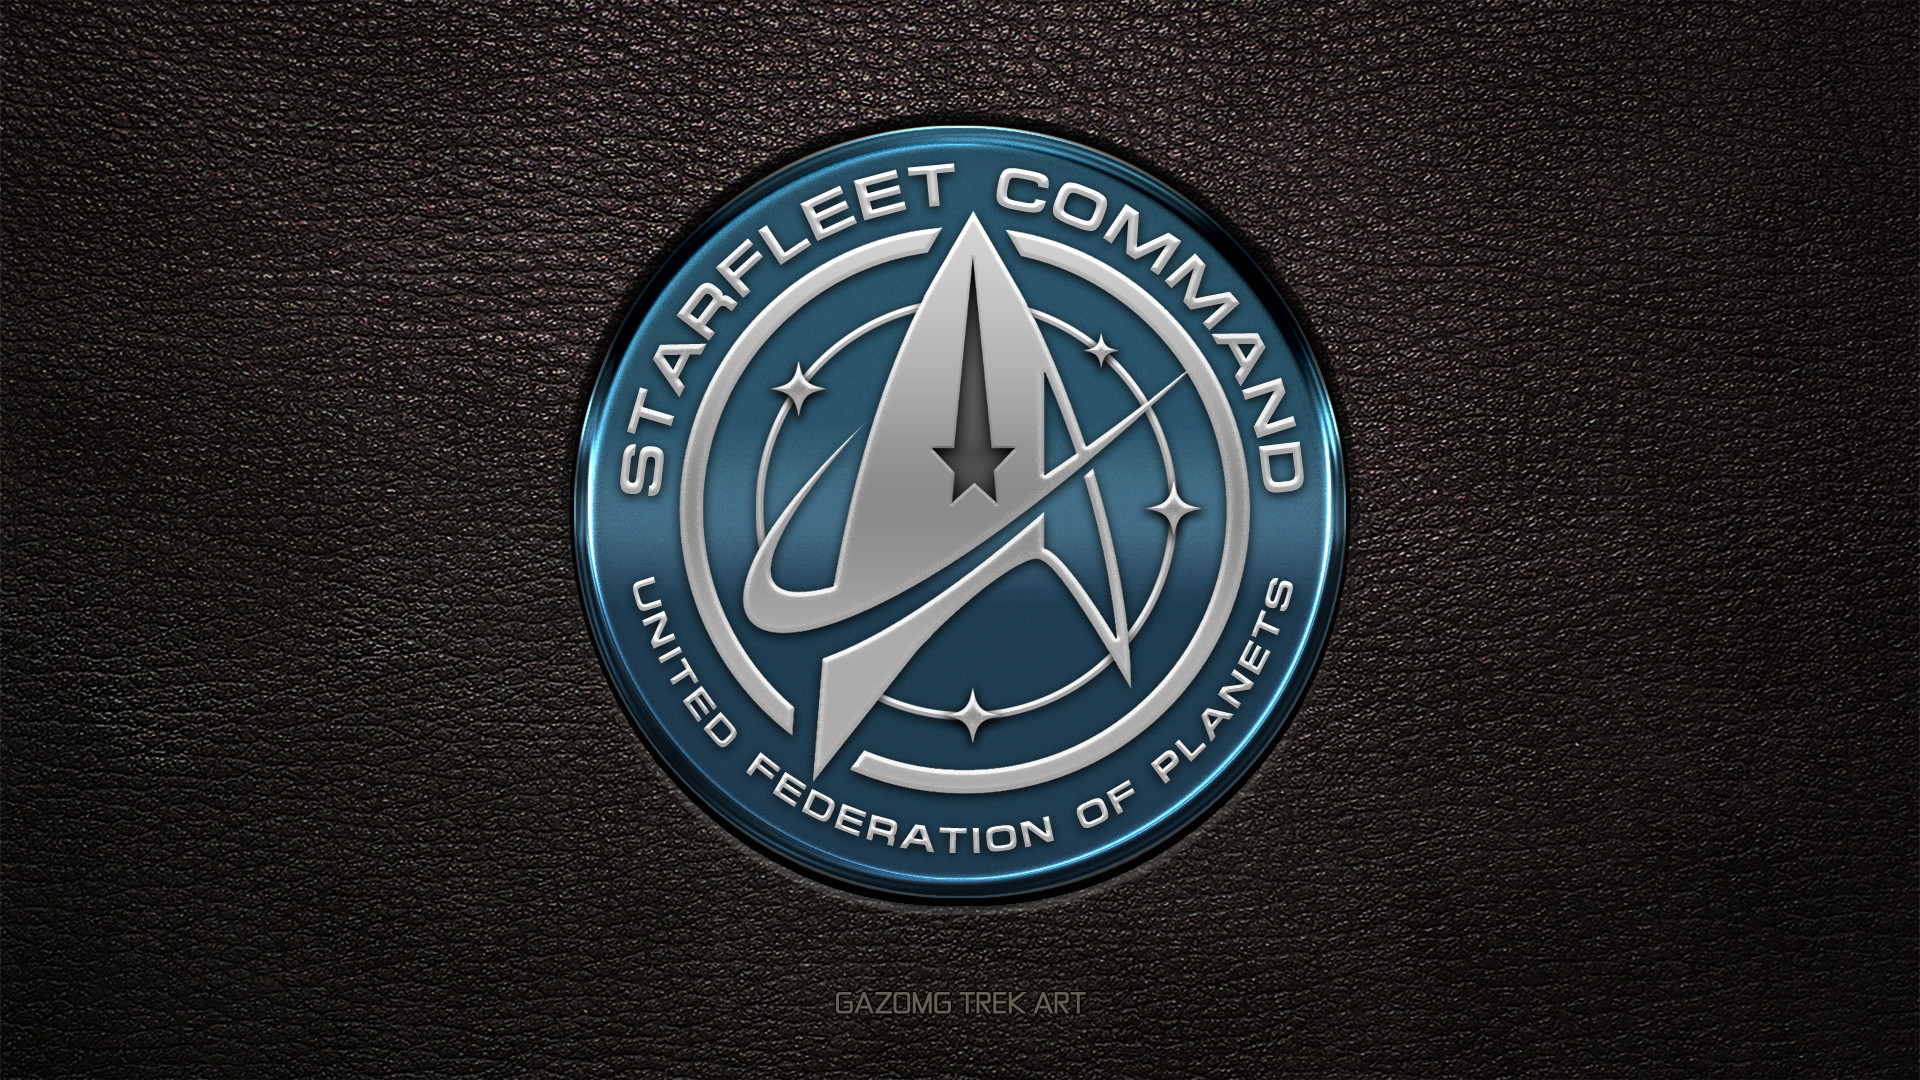 1920x1080 ... New Star Trek USS Discovery Starfleet Command Logo by gazomg